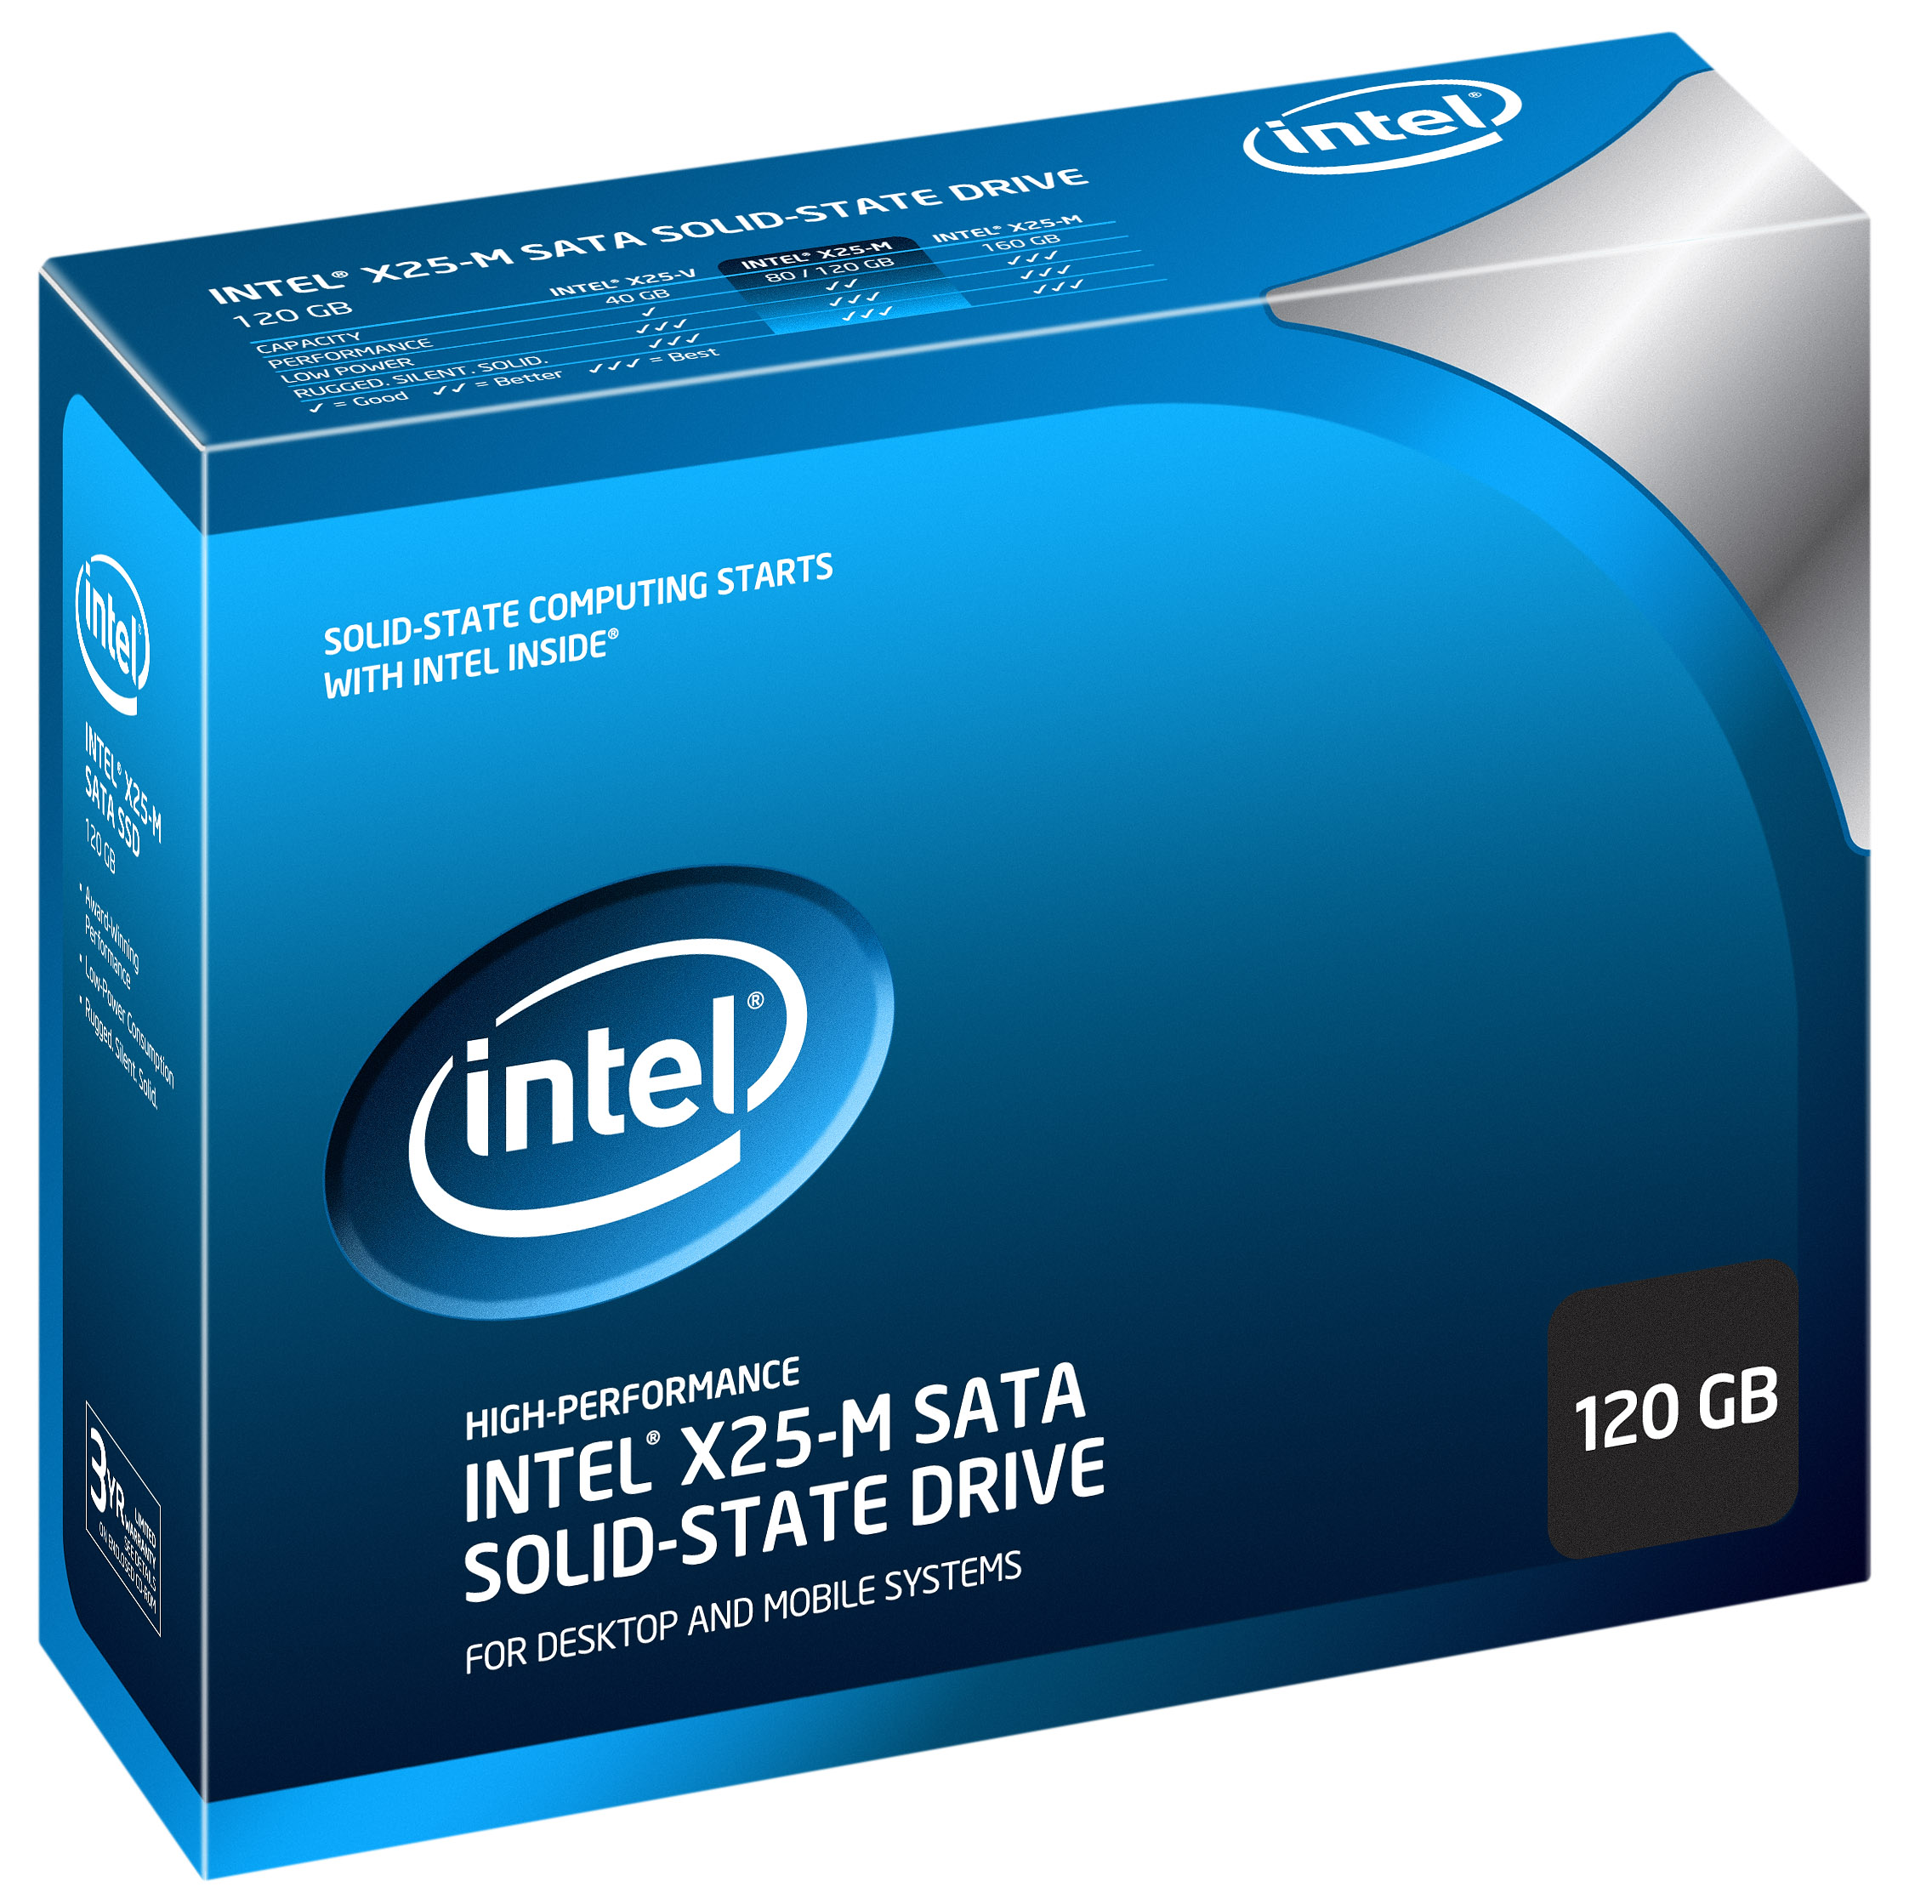 Immagine pubblicata in relazione al seguente contenuto: Intel riduce i prezzi degli SSD X25-M e ne lancia uno da 120GB | Nome immagine: news14192_1.jpg